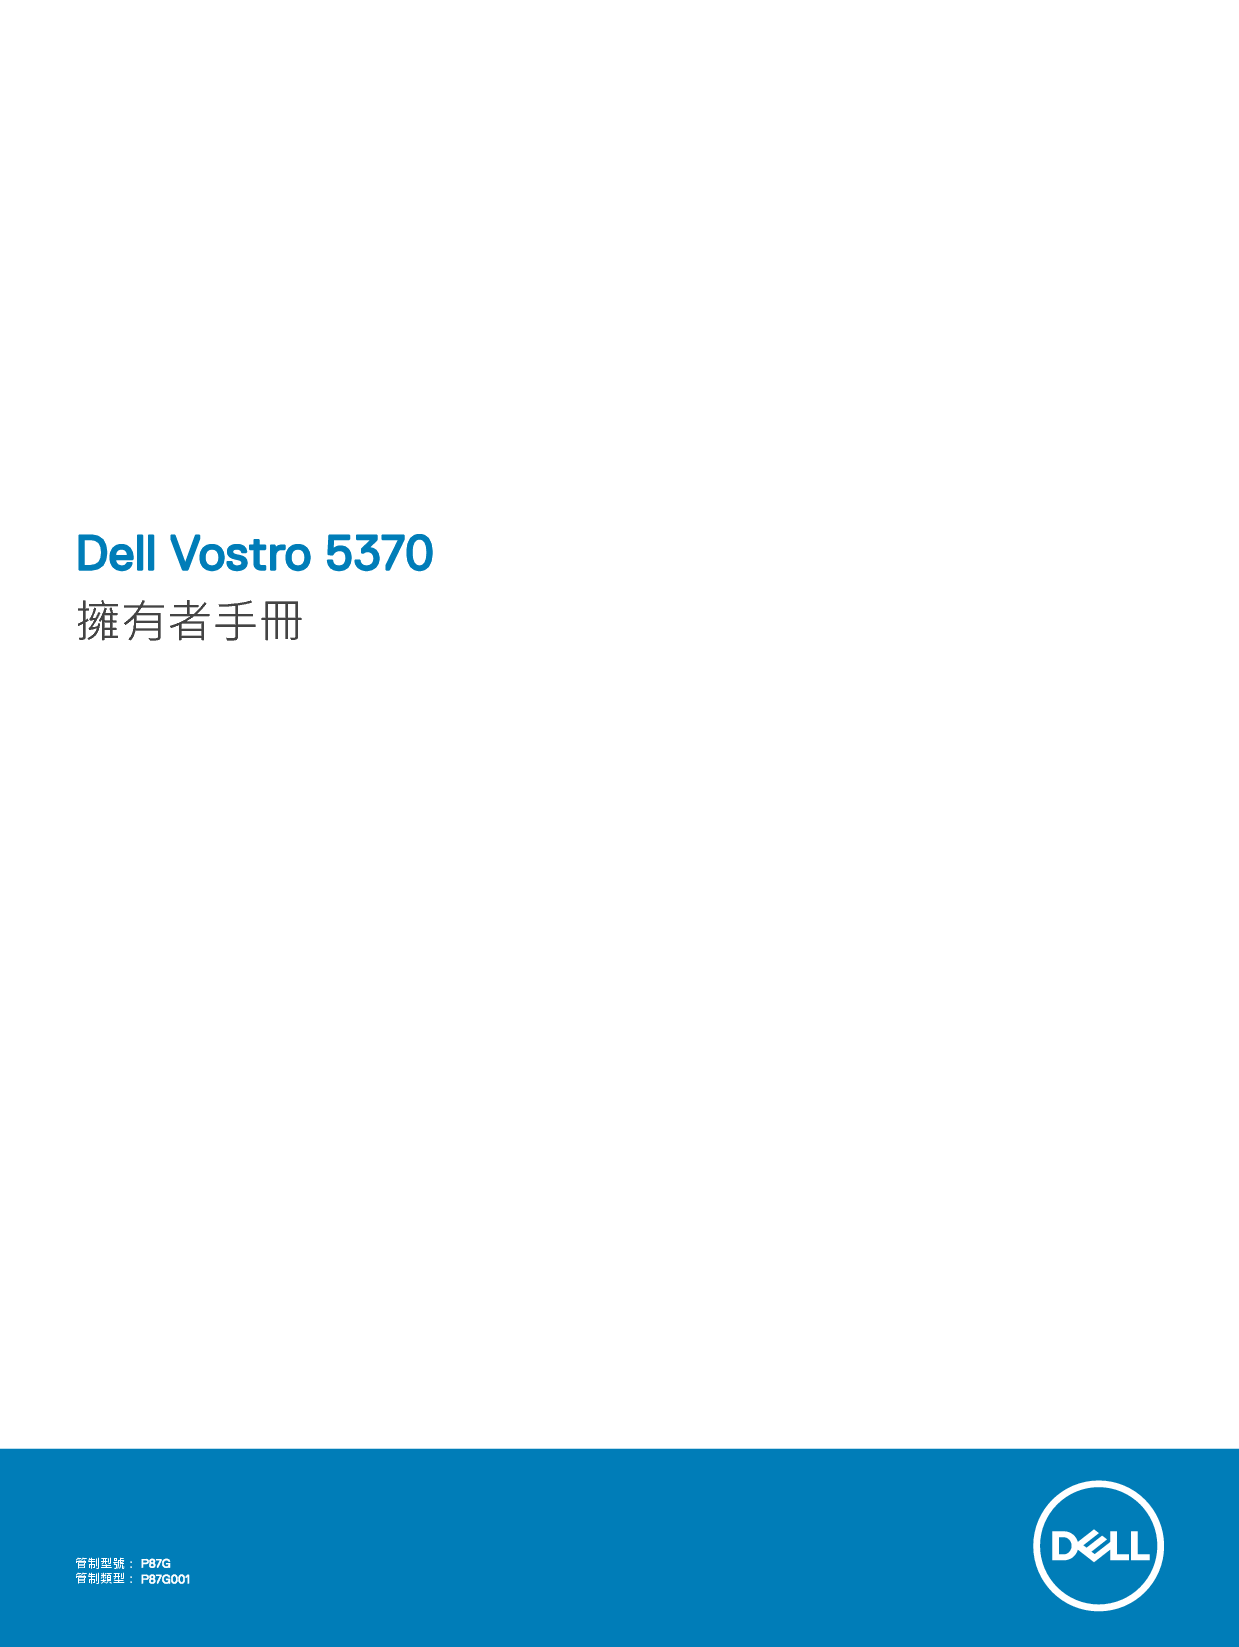 戴尔 Dell Vostro 5370 繁体 用户手册 封面